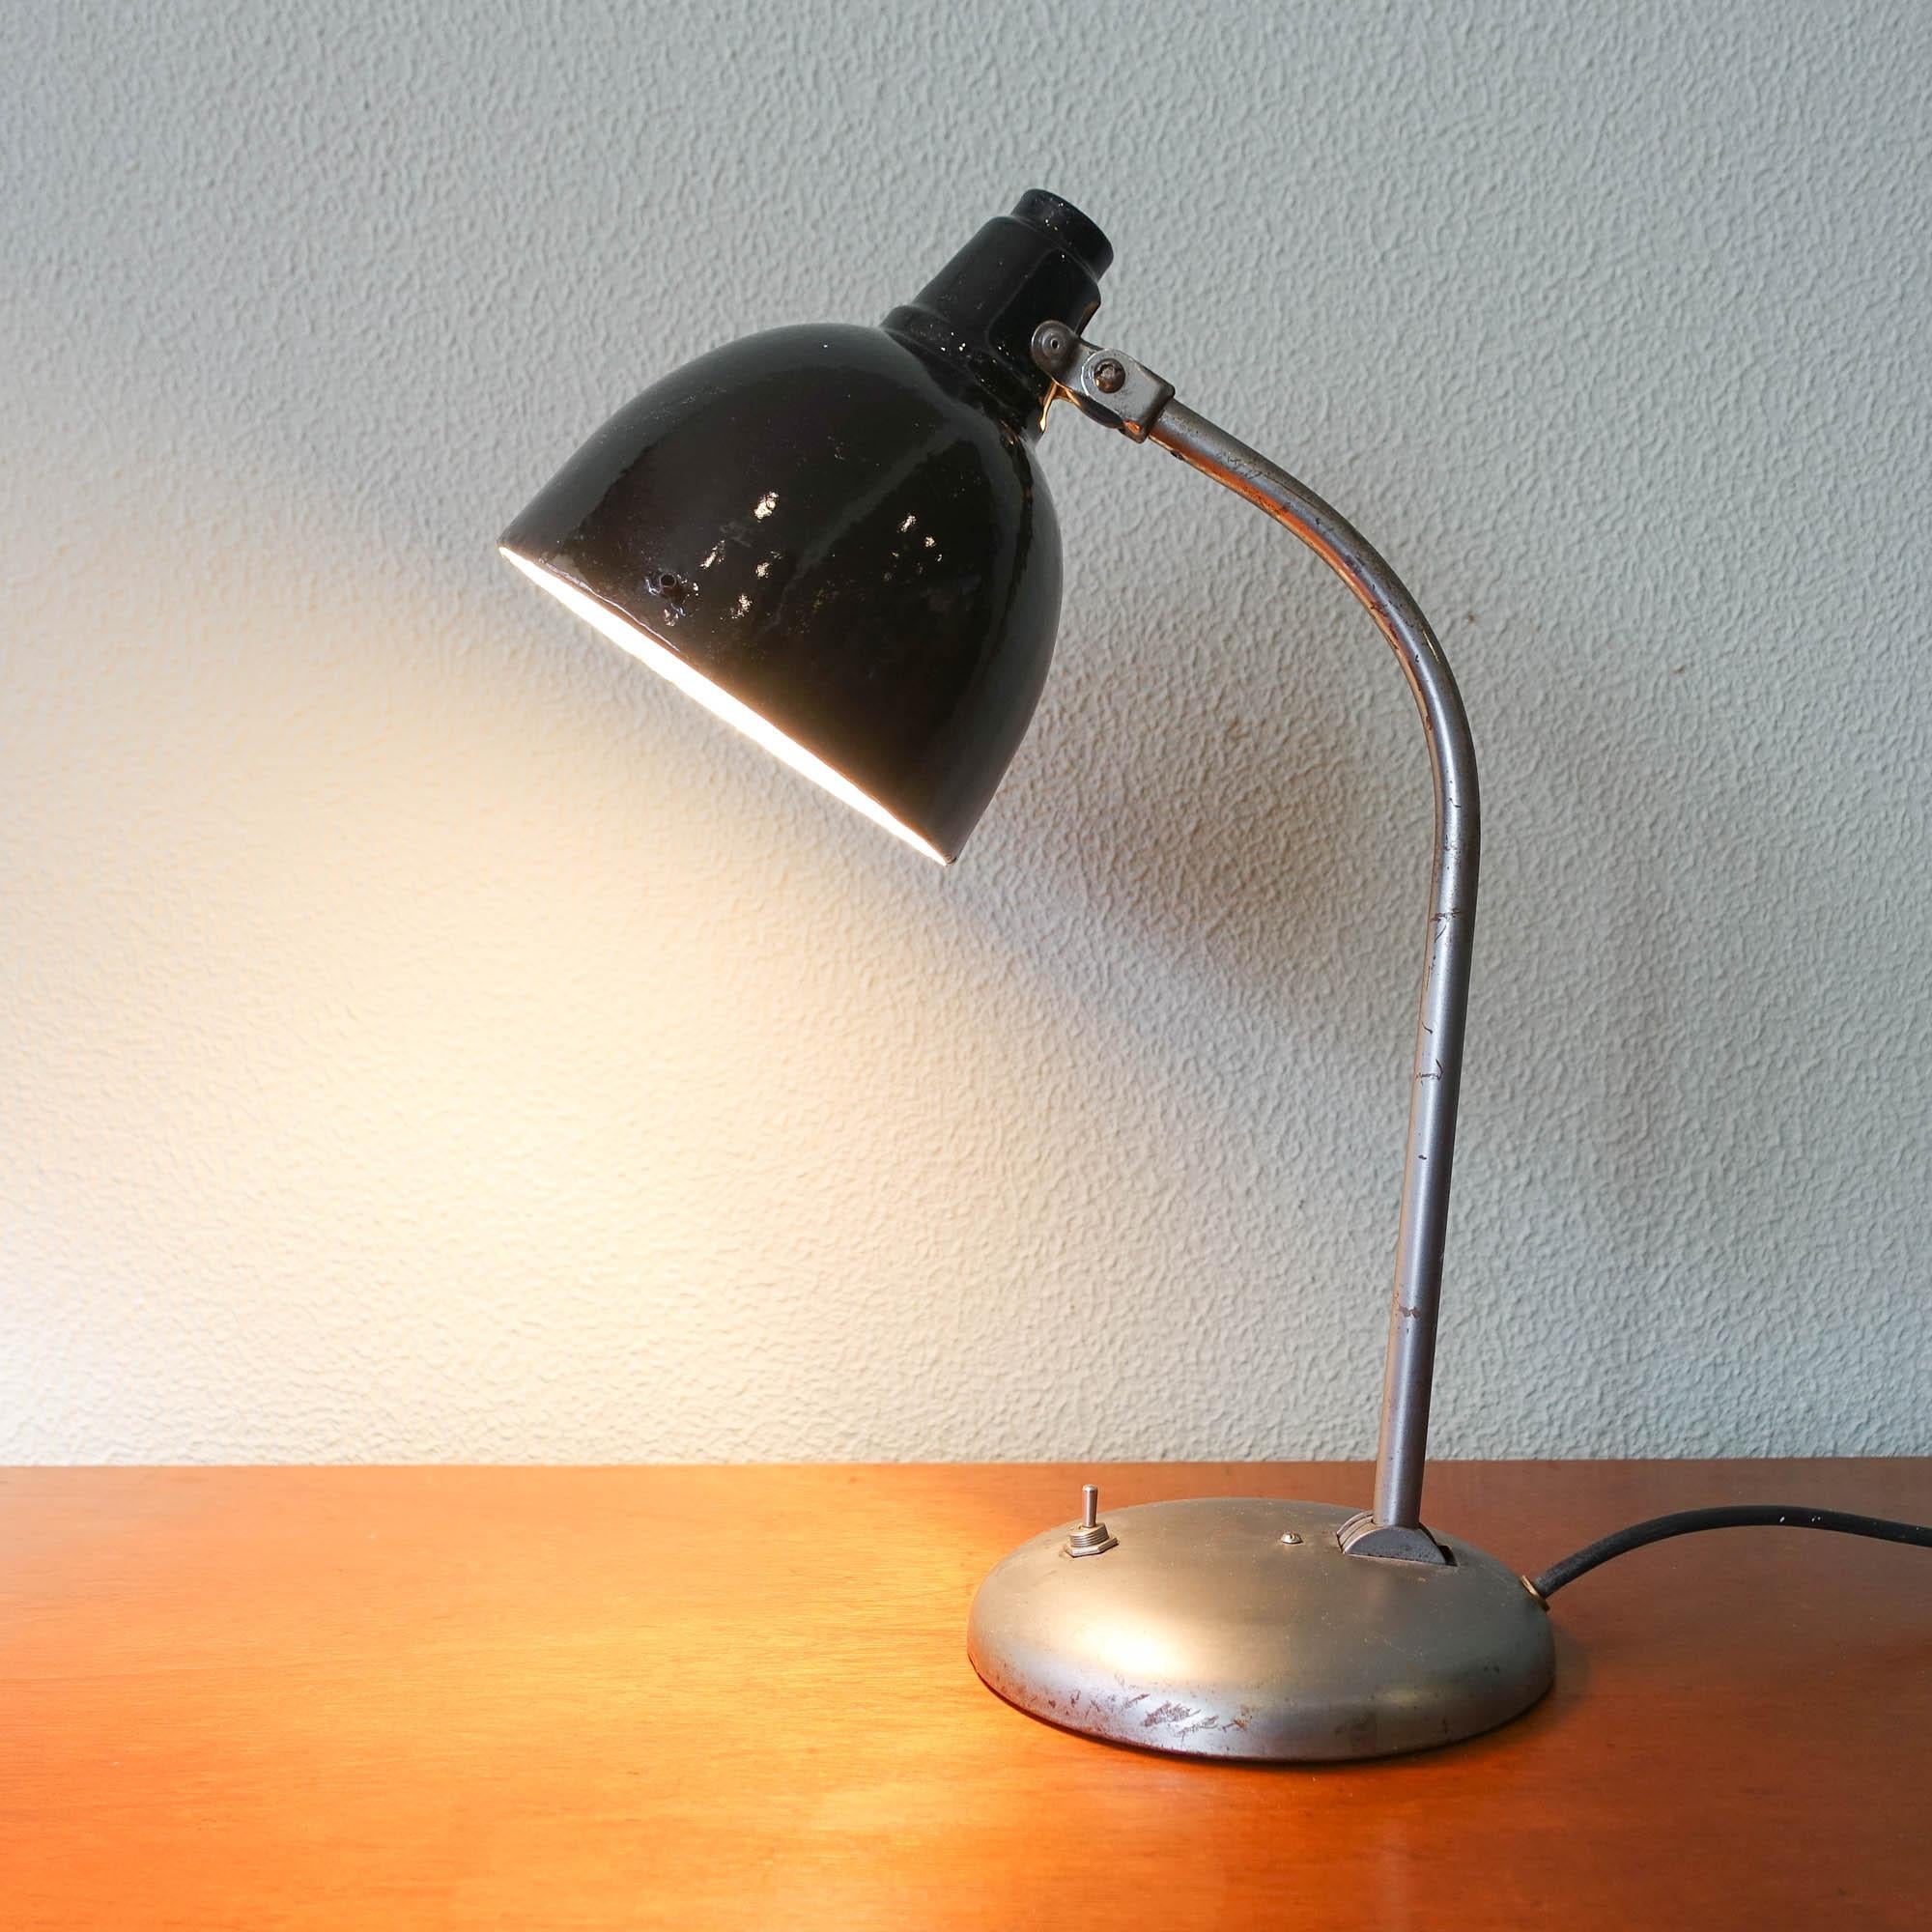 Diese Schreibtischlampe wurde in den 1930er Jahren von Hala in den Niederlanden entworfen und hergestellt. Sie besteht aus einem hochwertigen grauen Metallsockel mit einem schwarz lackierten Schirm. Der Arm ermöglicht es, die Kapuze der Leuchte und